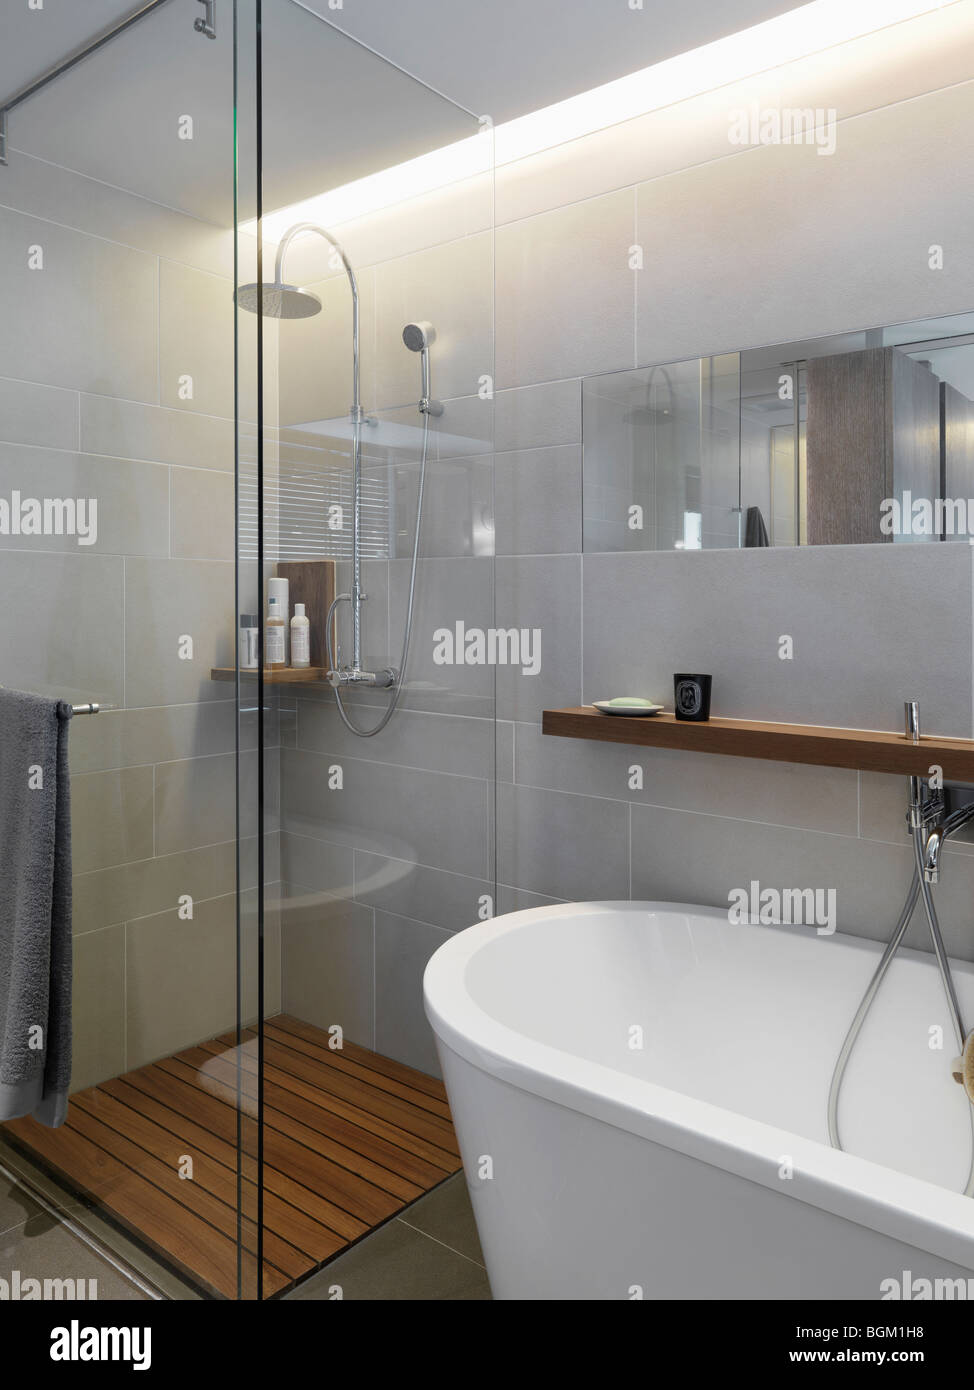 Petite douche en verre au coin de salle de bains moderne Banque D'Images